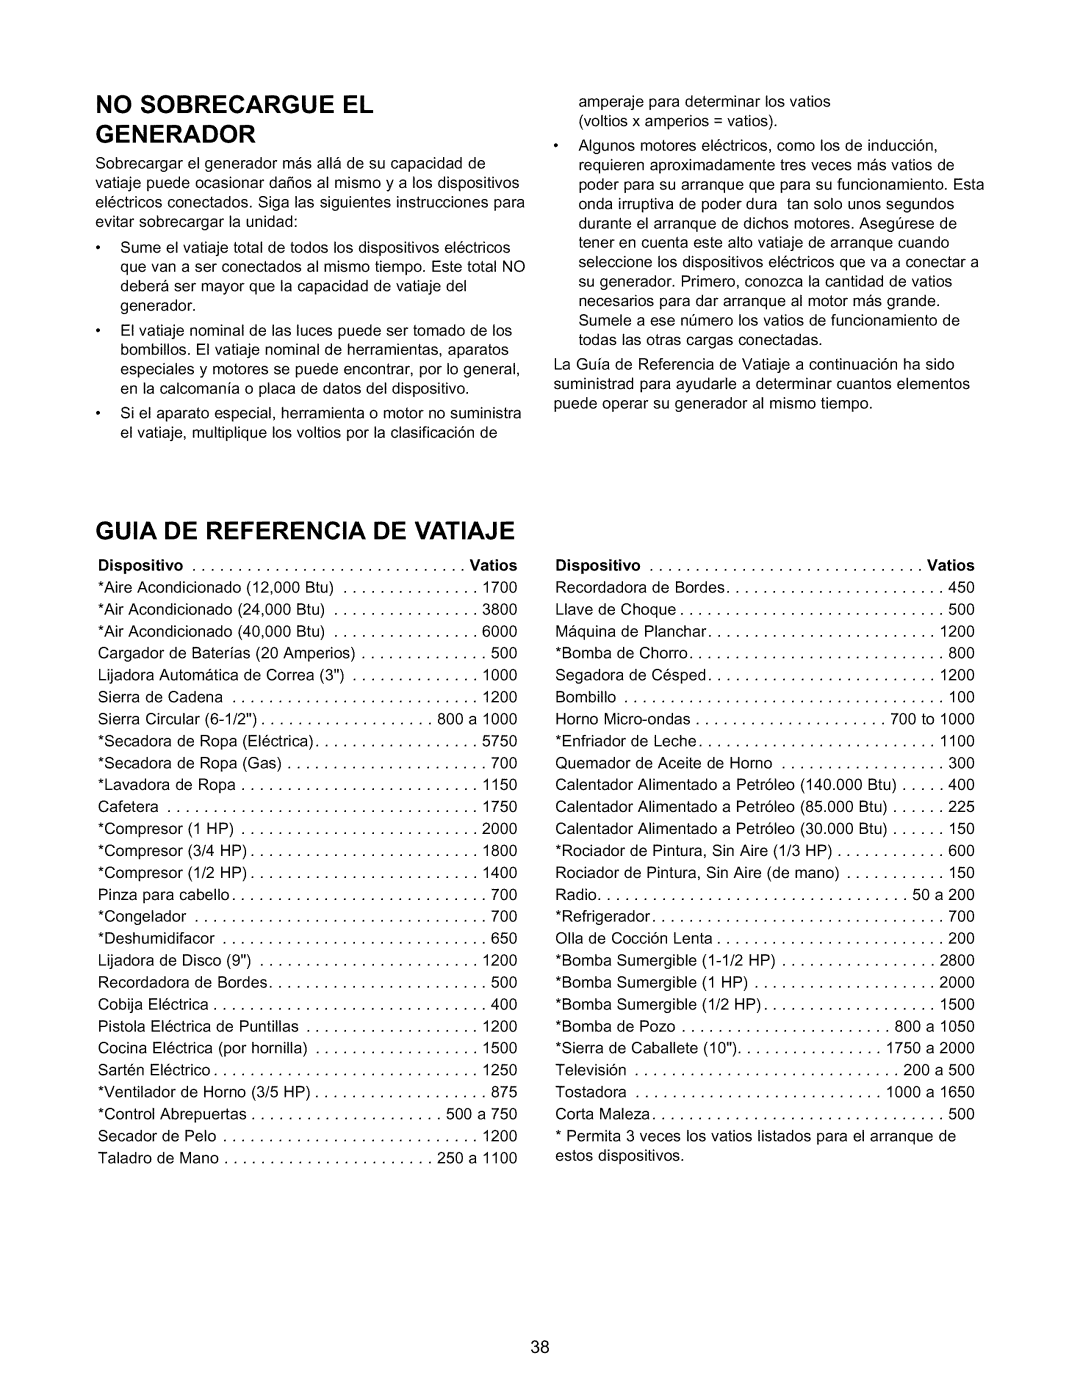 Craftsman 580.327141 owner manual No Sobrecargue El Generador, Guia De Referencia De Vatiaje, Vatios 